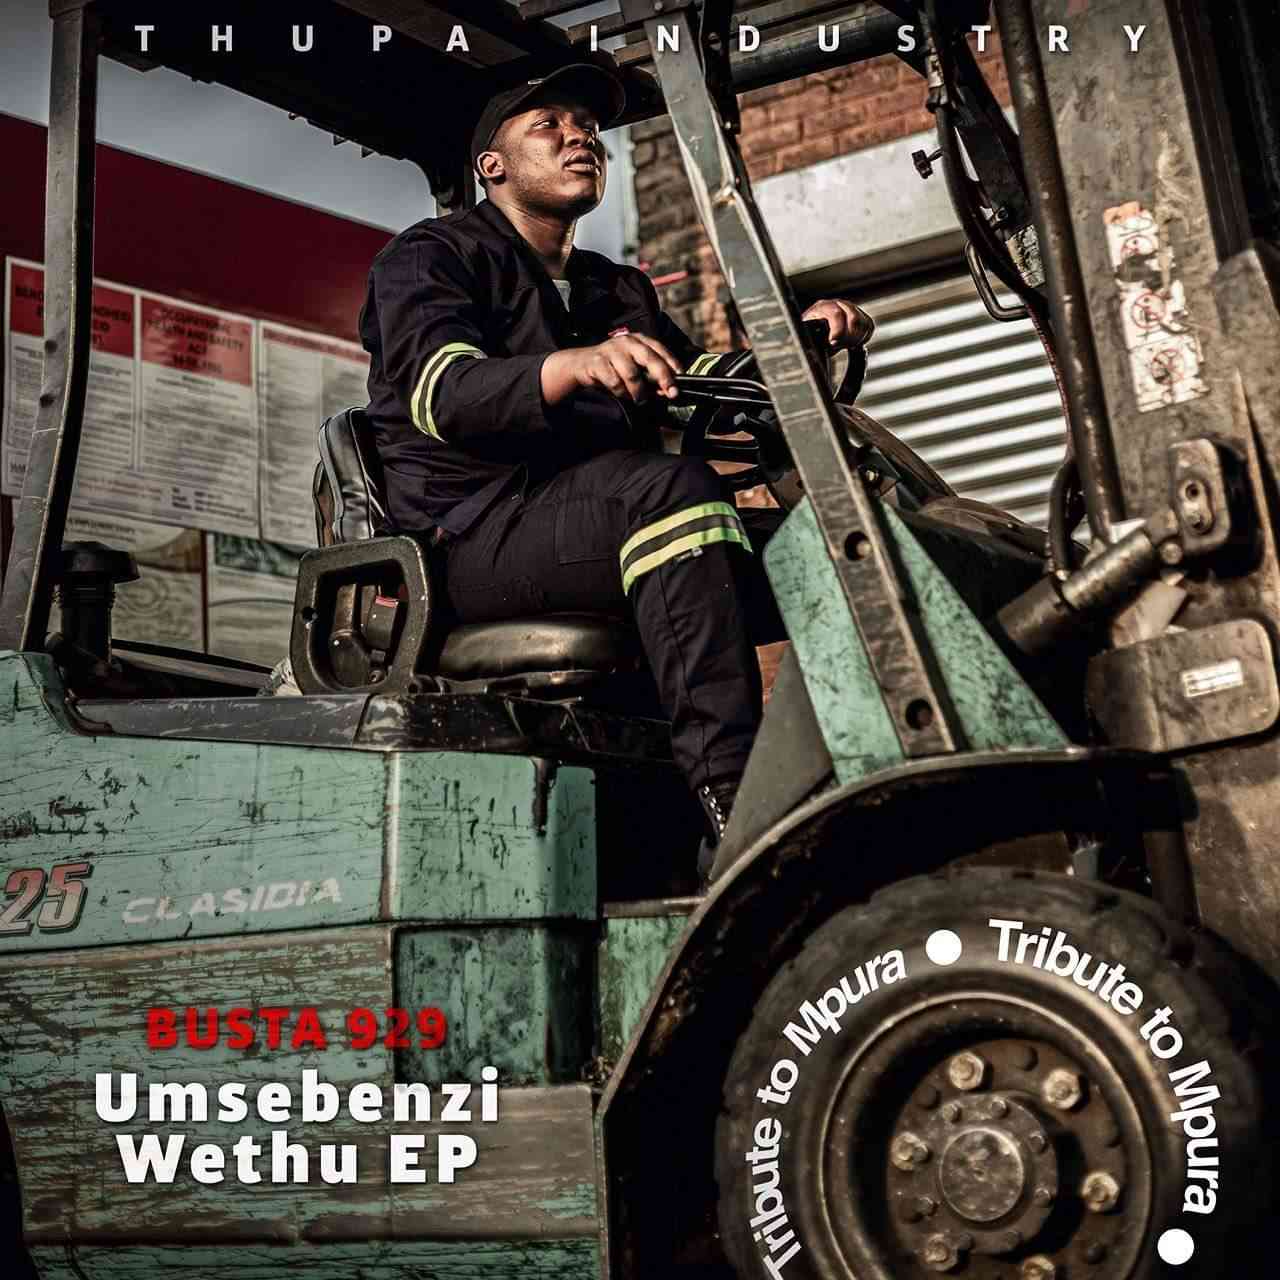 Busta 929 Umsebenzi Wethu EP (Tribute To Mpura) 